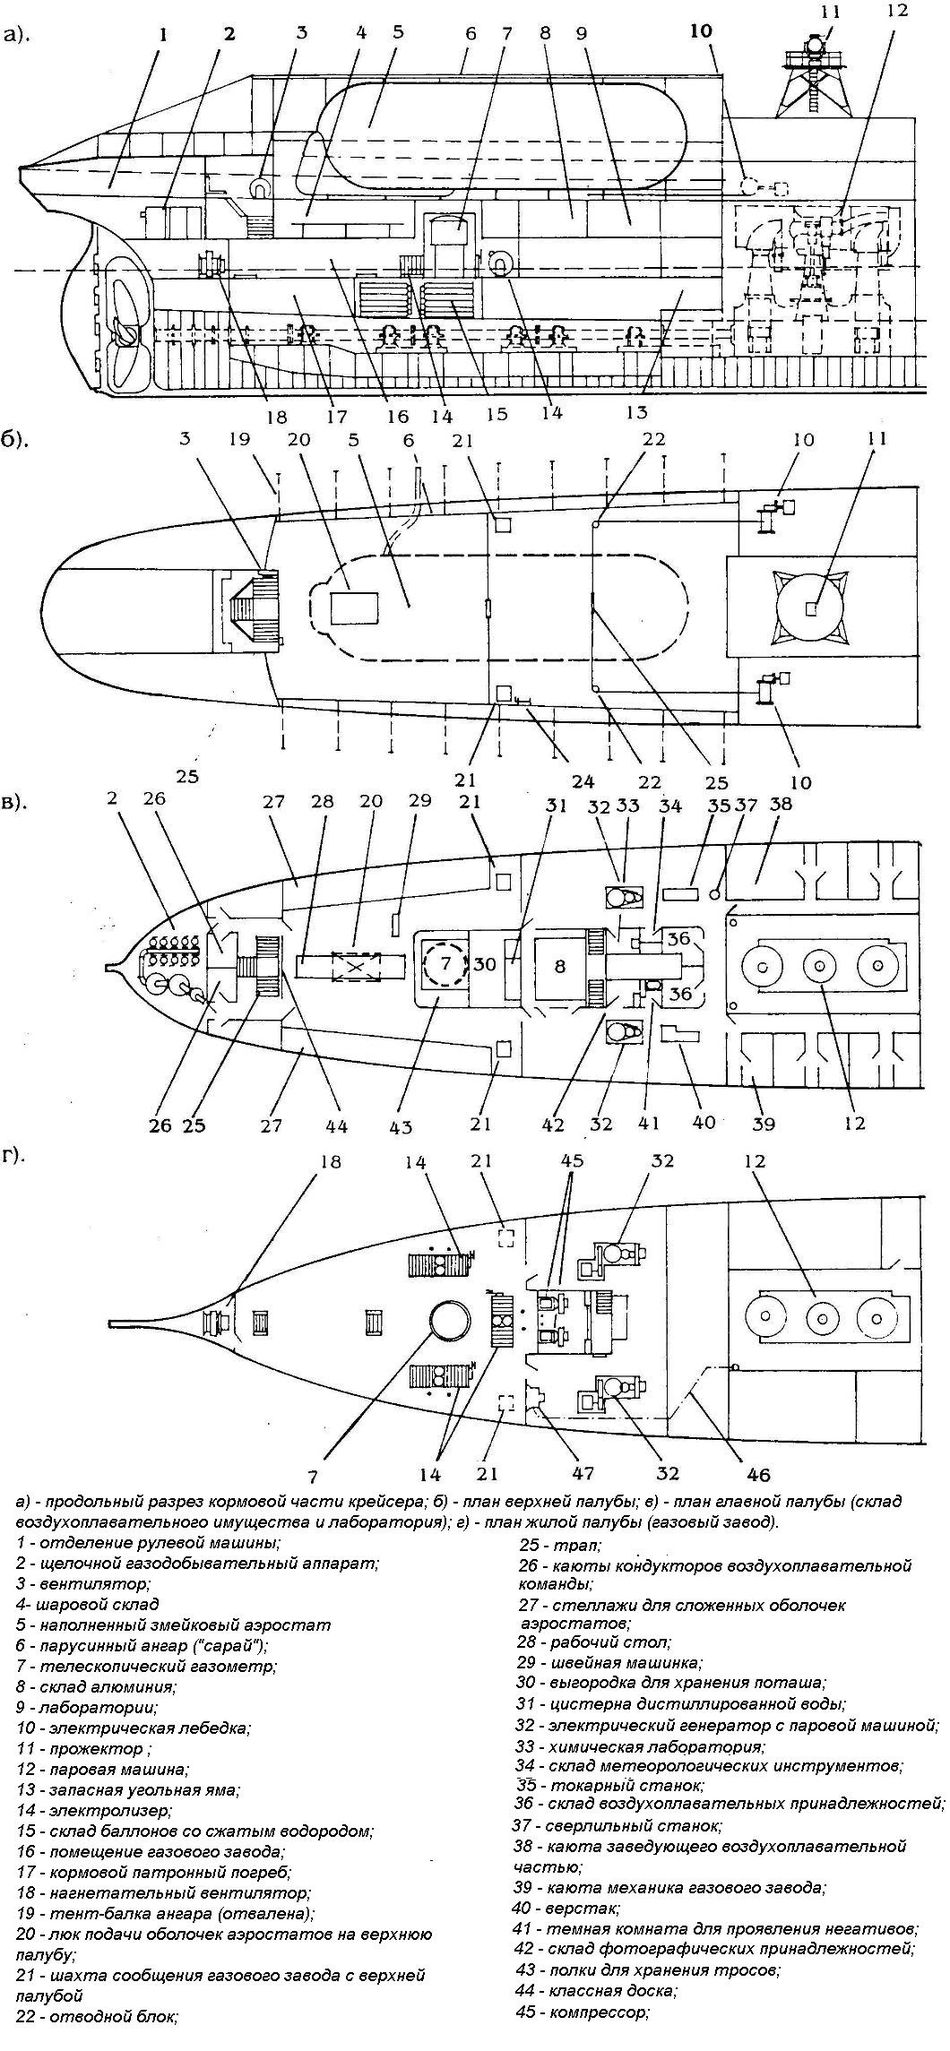 Размещение воздухоплавательного оборудования крейсера Русь